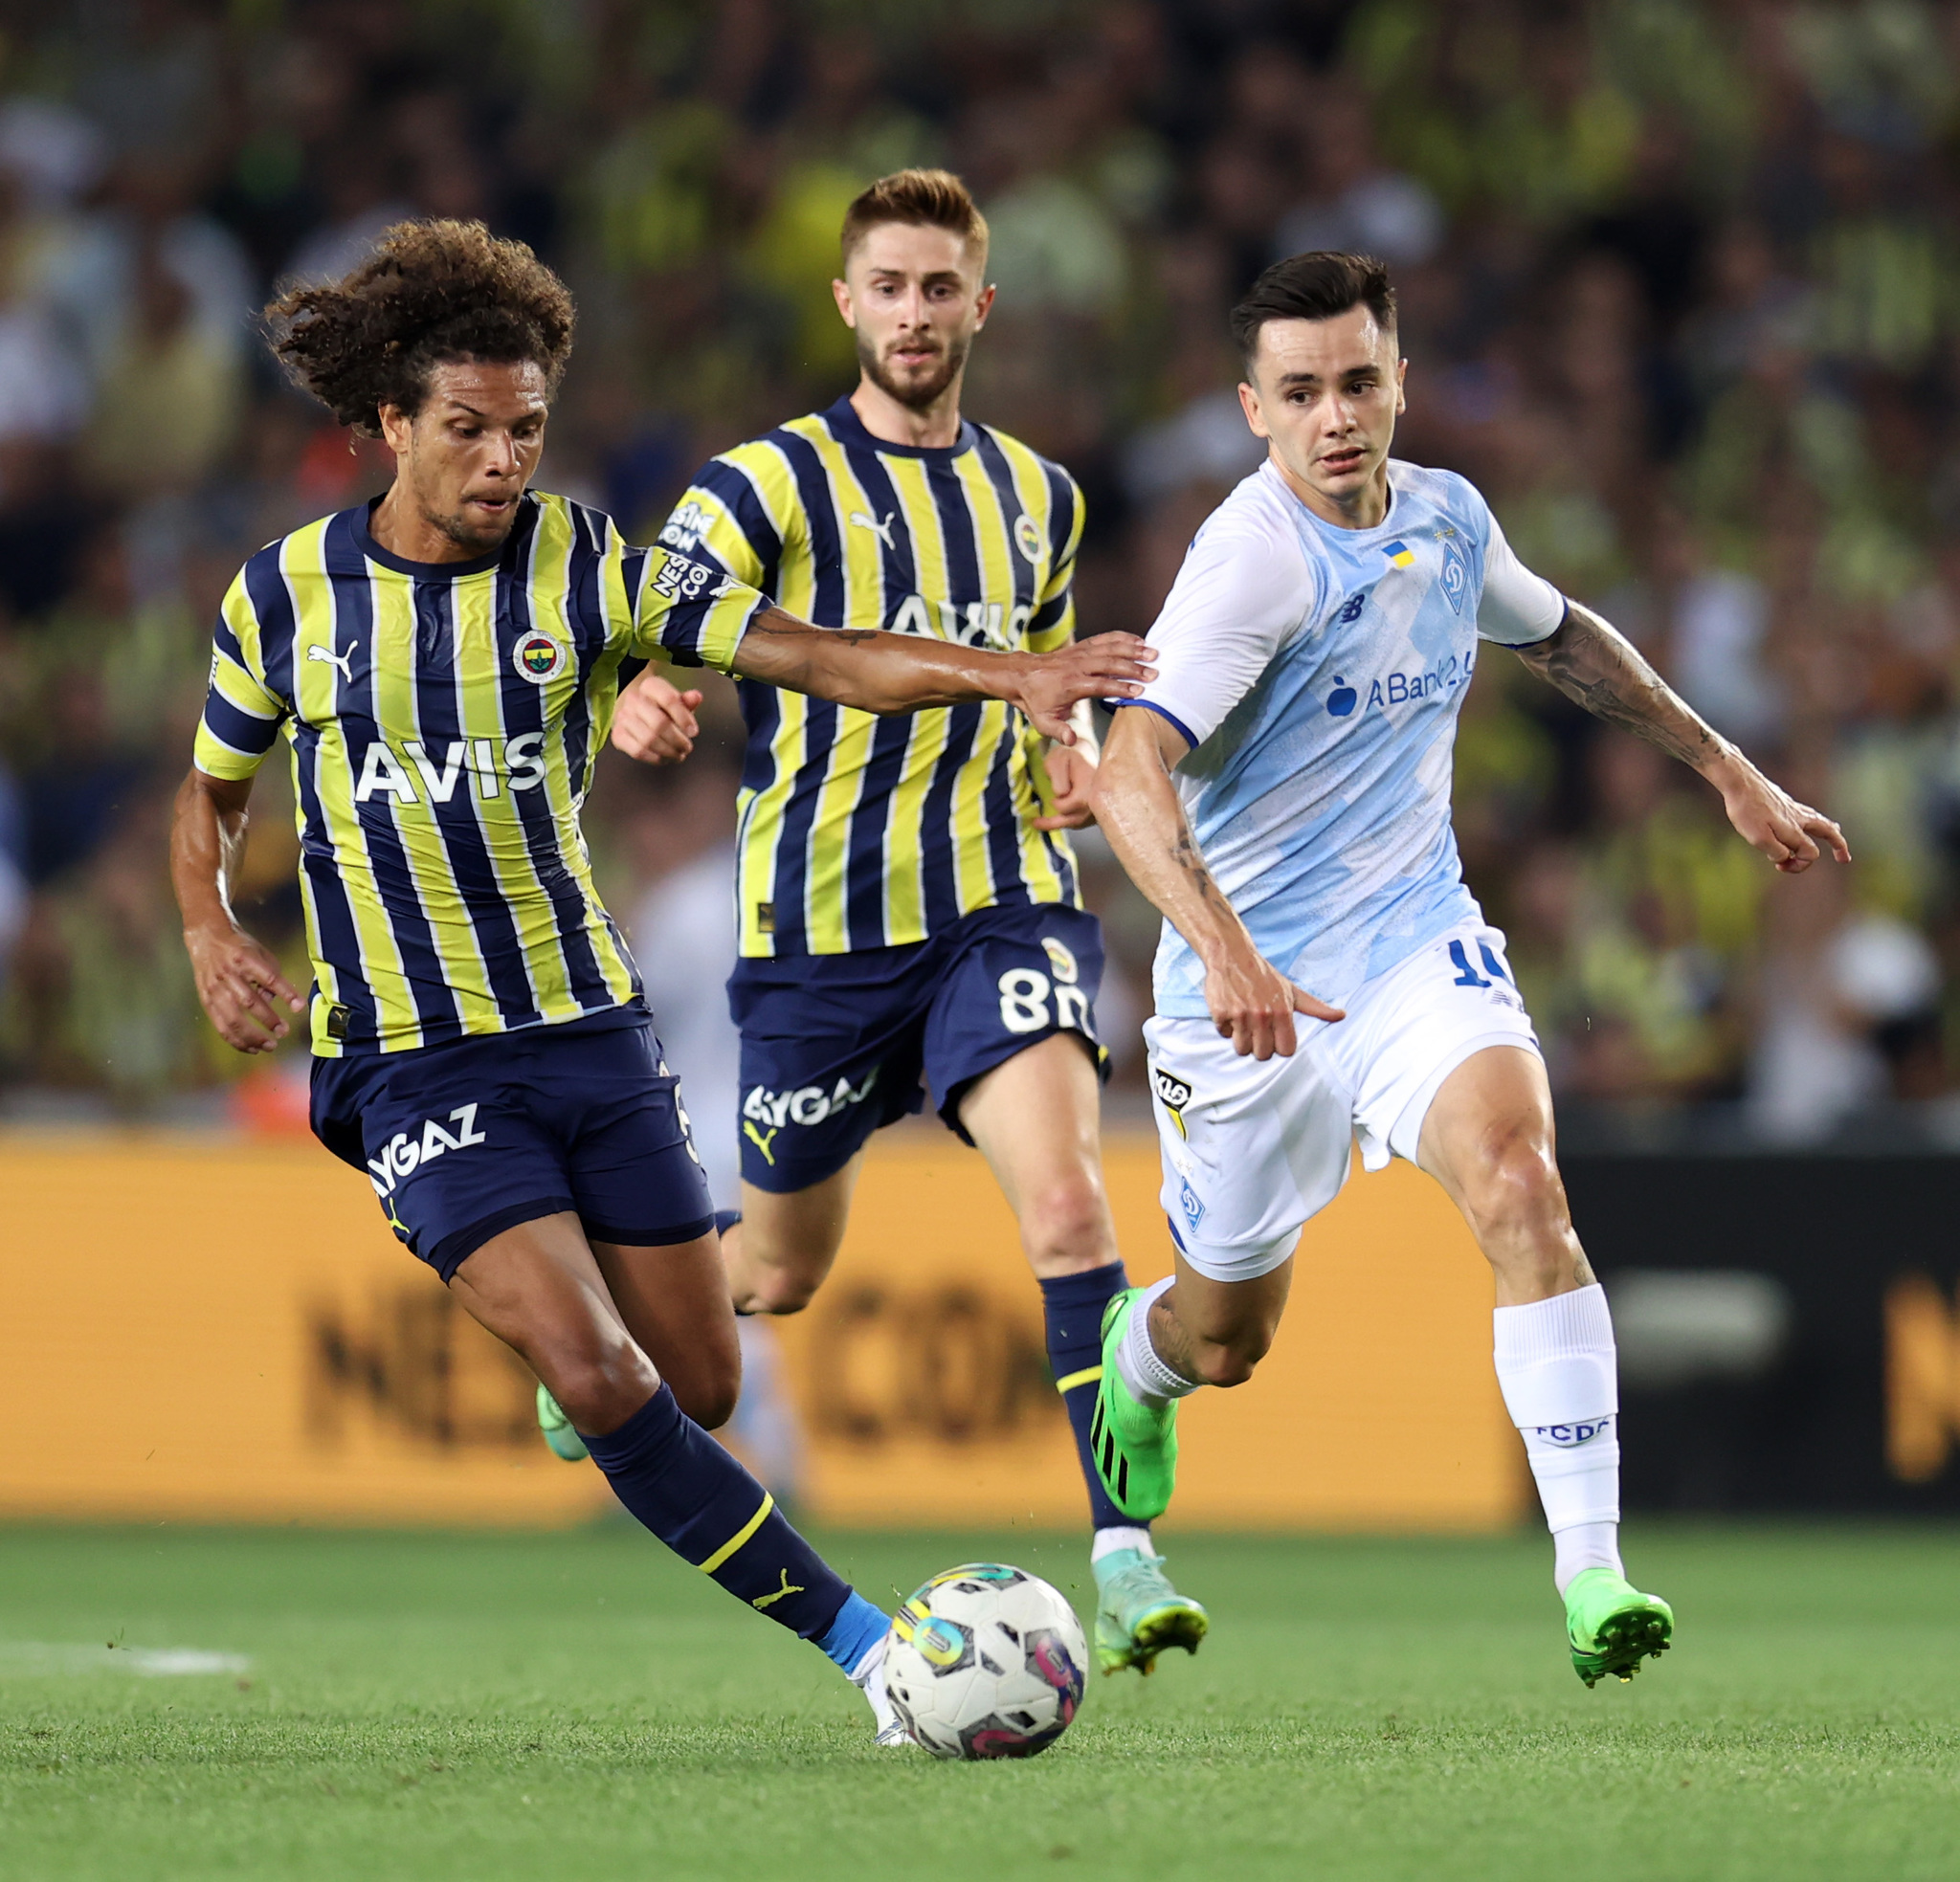 FENERBAHÇE TRANSFER HABERLERİ - Fenerbahçe’den Pedro dos Santos için takas girişimi! Önerilen isim Diego Rossi